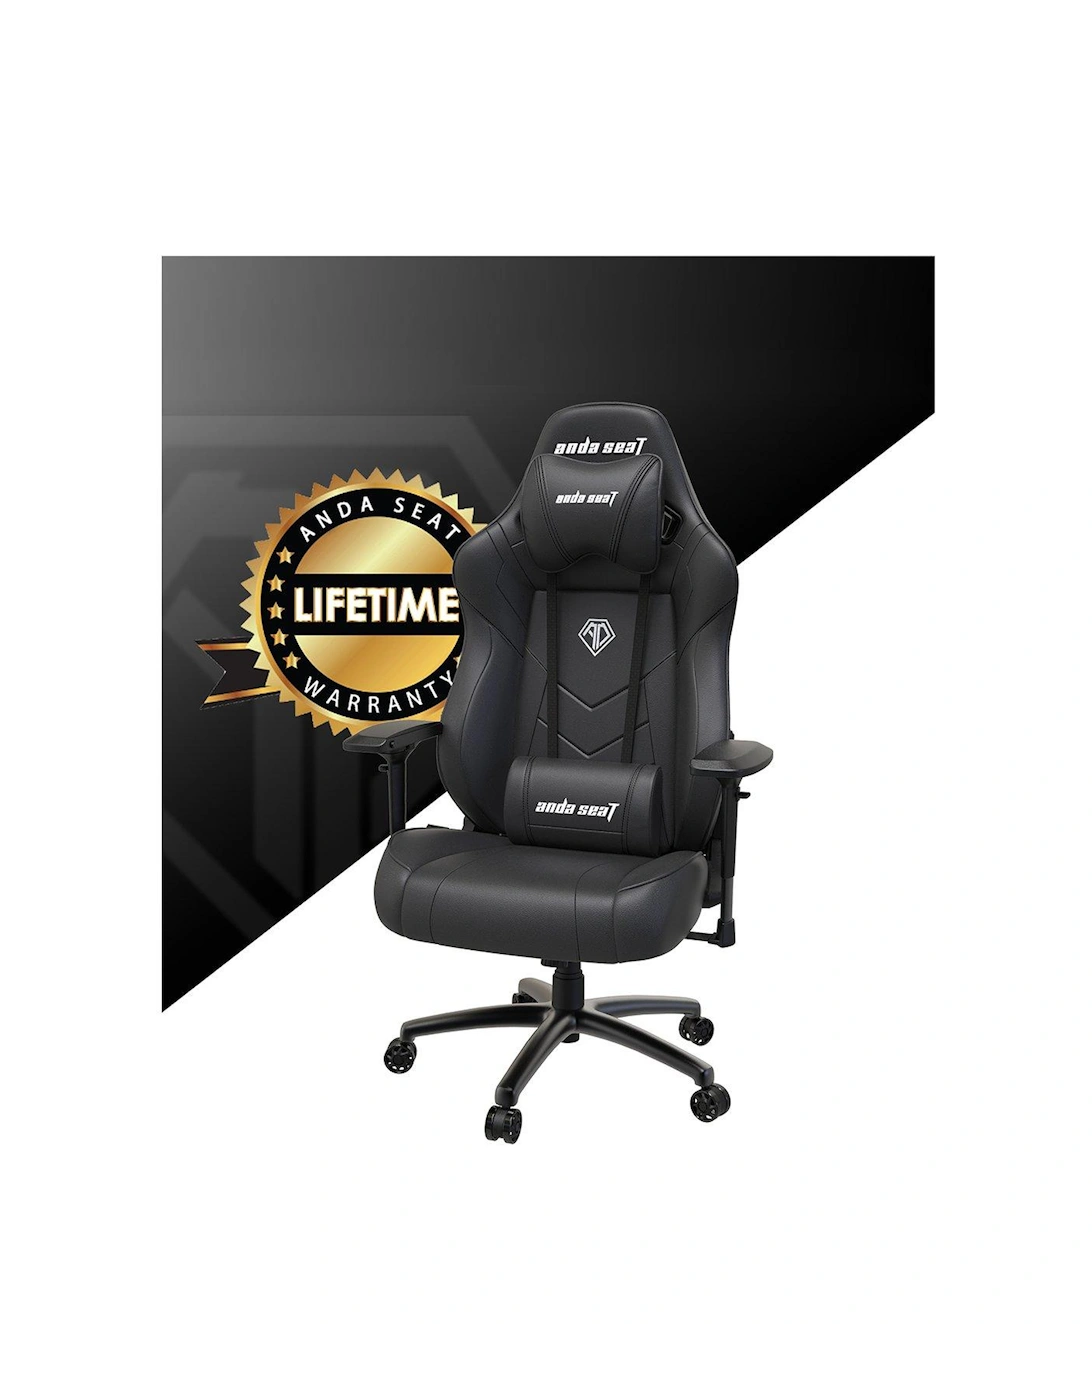 Andaseat Dark Demon Premium Gaming Chair Black, 2 of 1